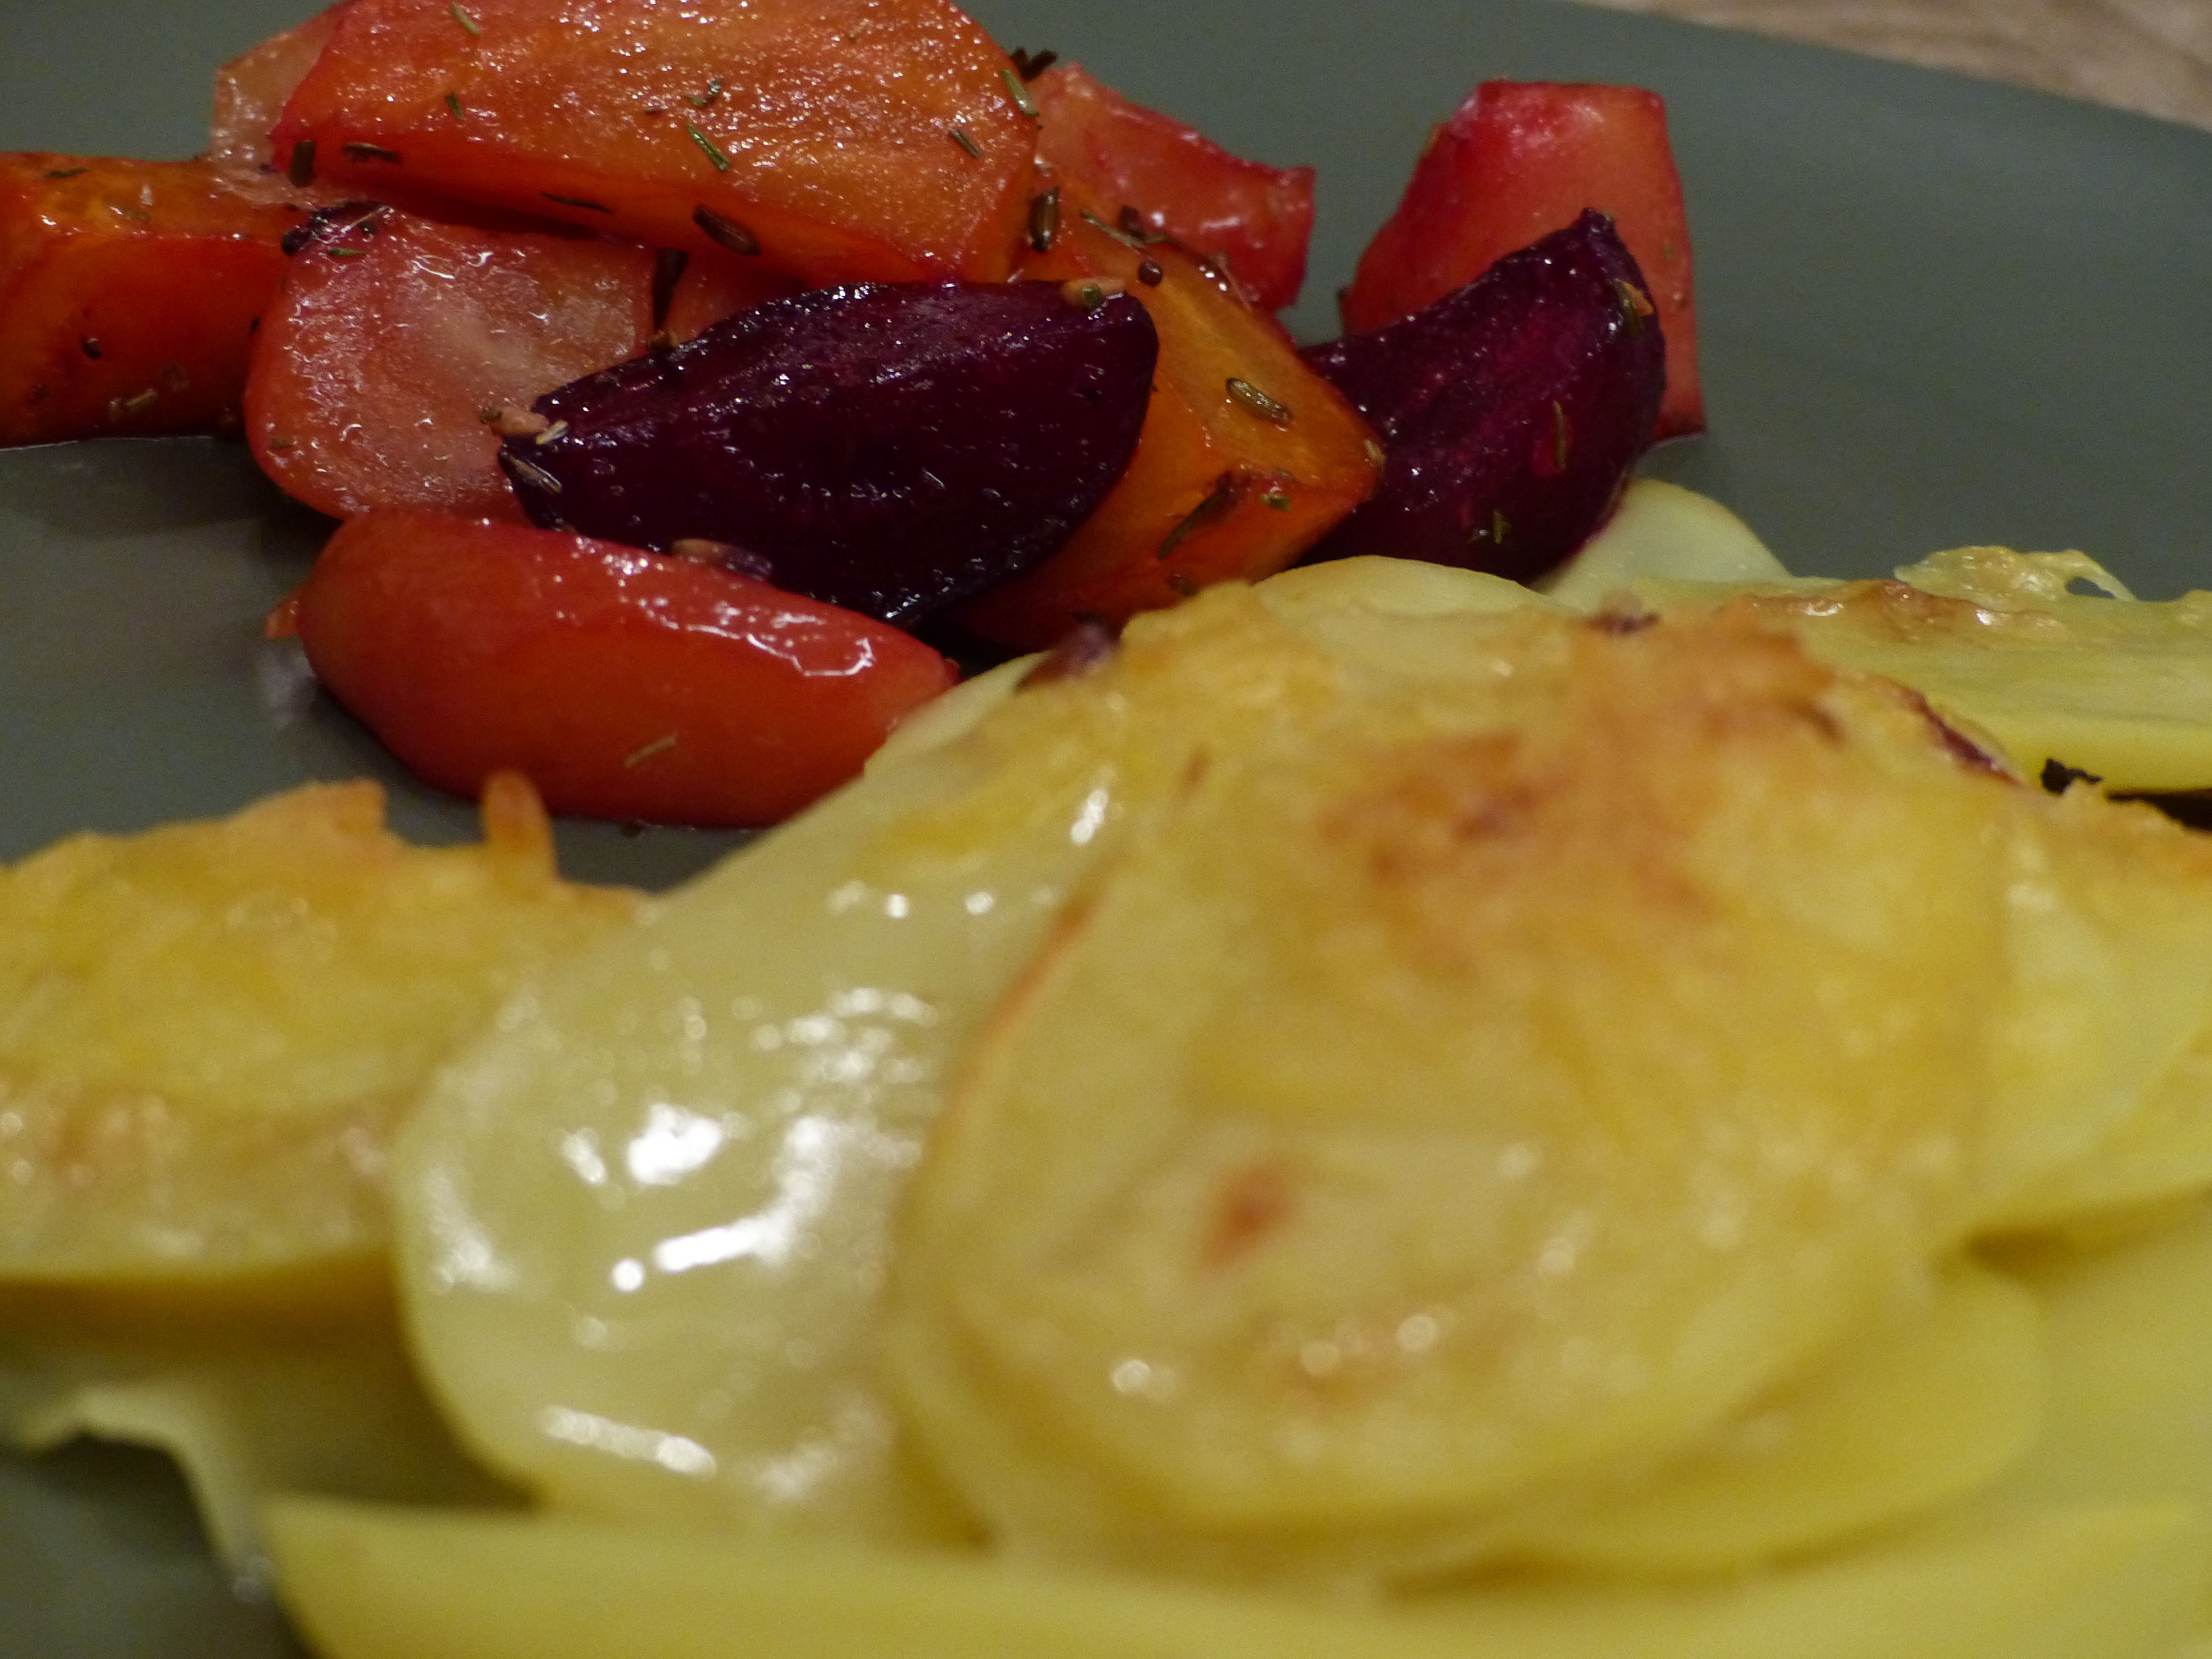 Kartoffelgratin mit warmen rote Bete Salat - its just foods by Jana